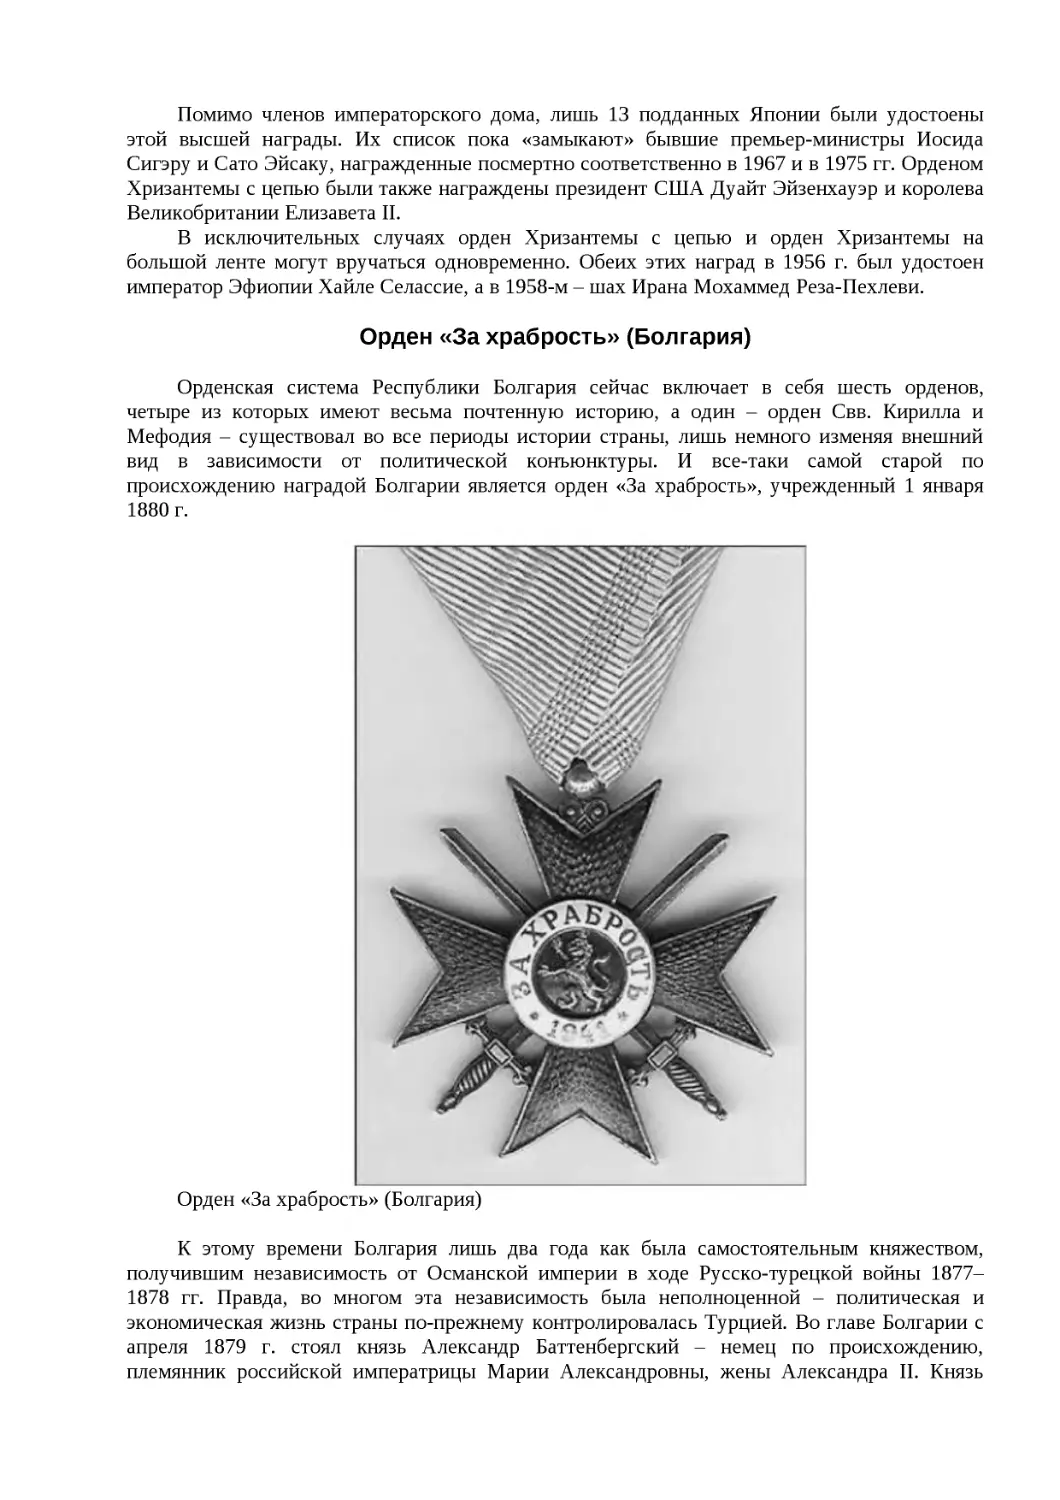 ﻿Орден «За храбрость» øБолгария